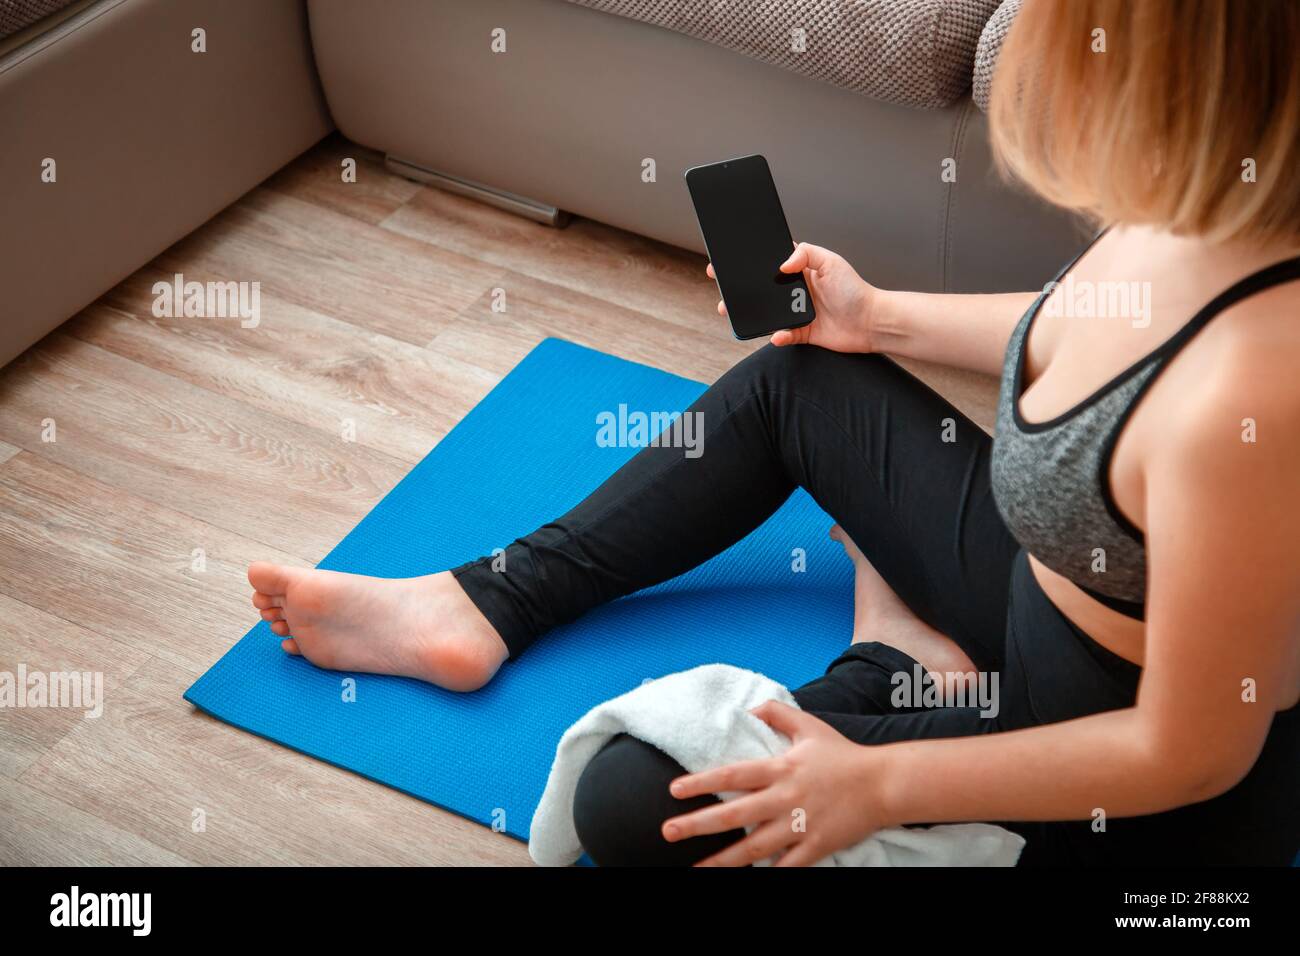 Mockup für App Online-Fitness-Programm, Remote Yoga-Klasse. Frau in Sportbekleidung hält Smartphone mit leerem Bildschirm für Sport oder Musik-App während eines Wor Stockfoto